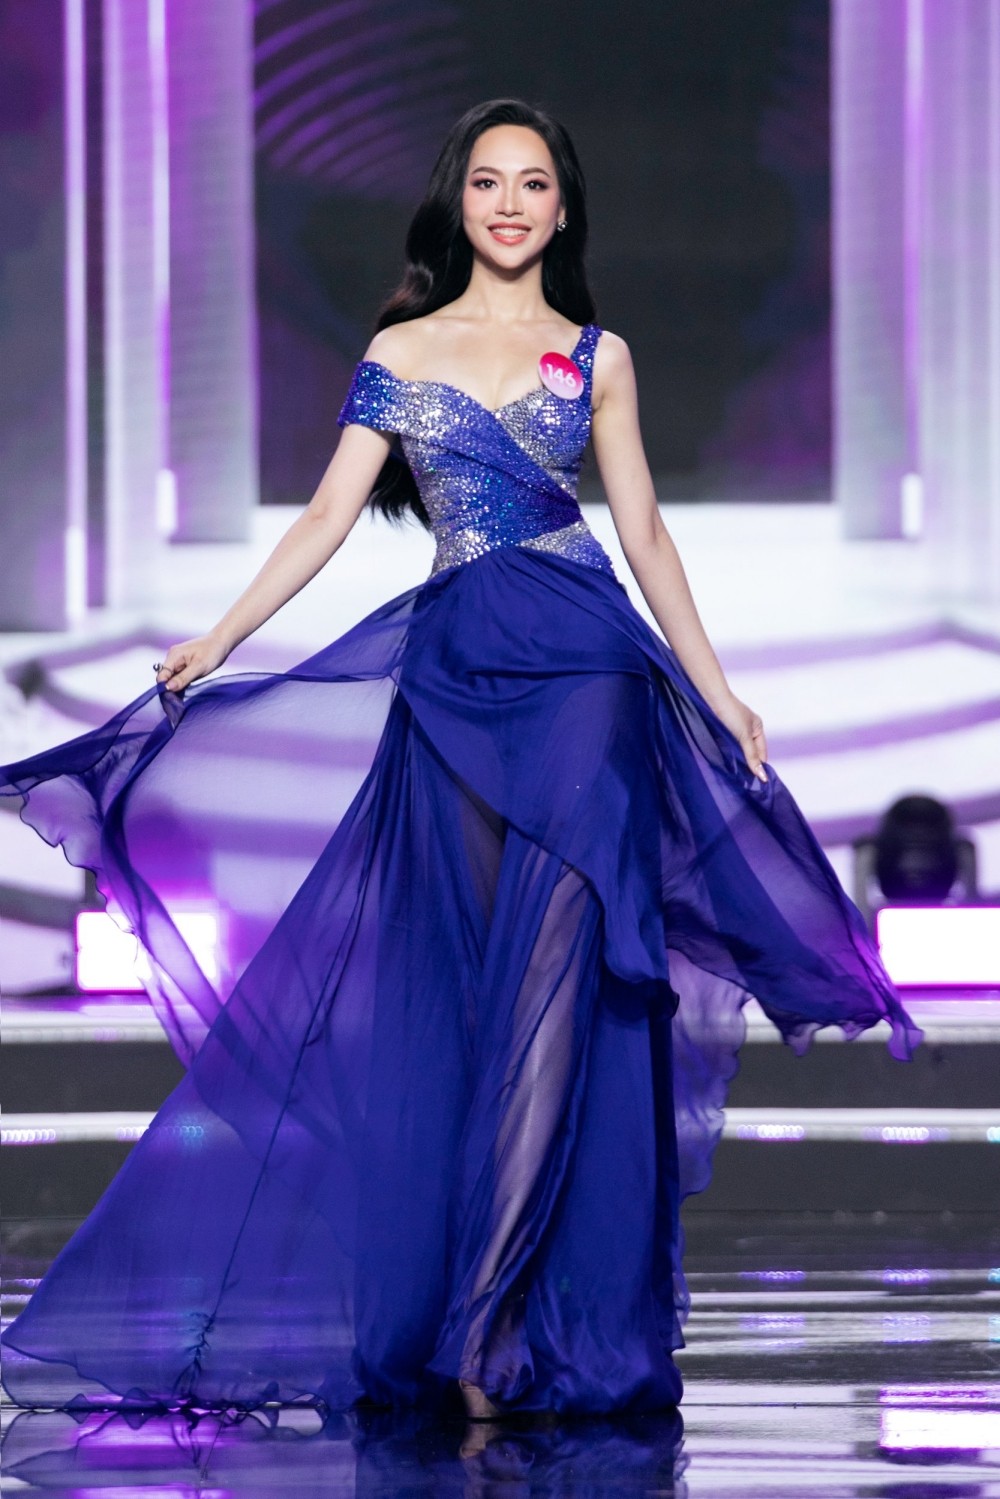 Nhan sắc và học vấn đáng ngưỡng mộ của Trịnh Thùy Linh - Á hậu 1 Hoa hậu Việt Nam 2022  - Ảnh 8.